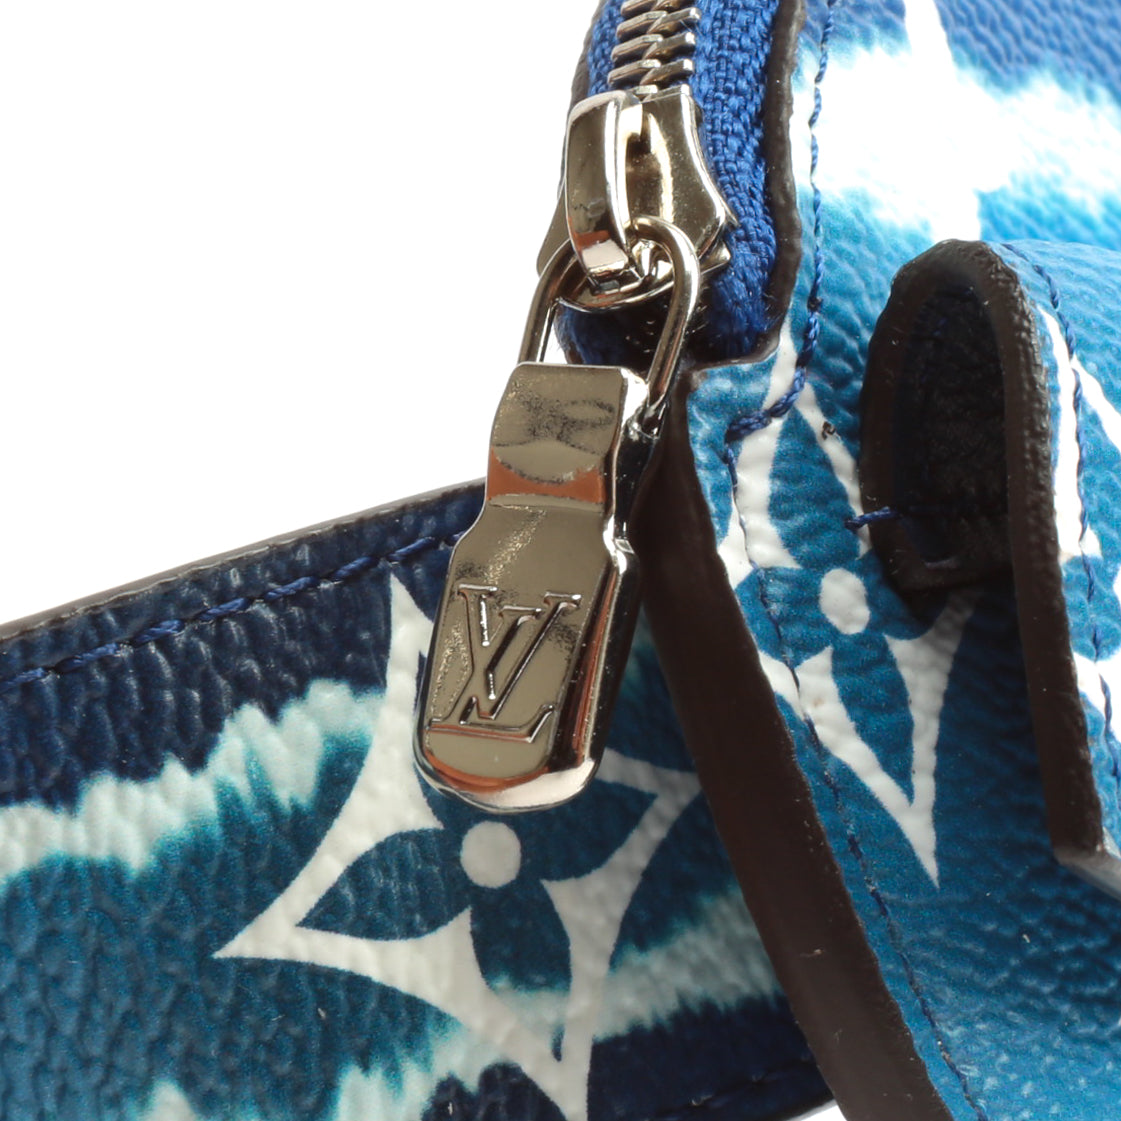 Louis Vuitton, Bags, Lv Escale Daily Multi Pocket 3mm Belt